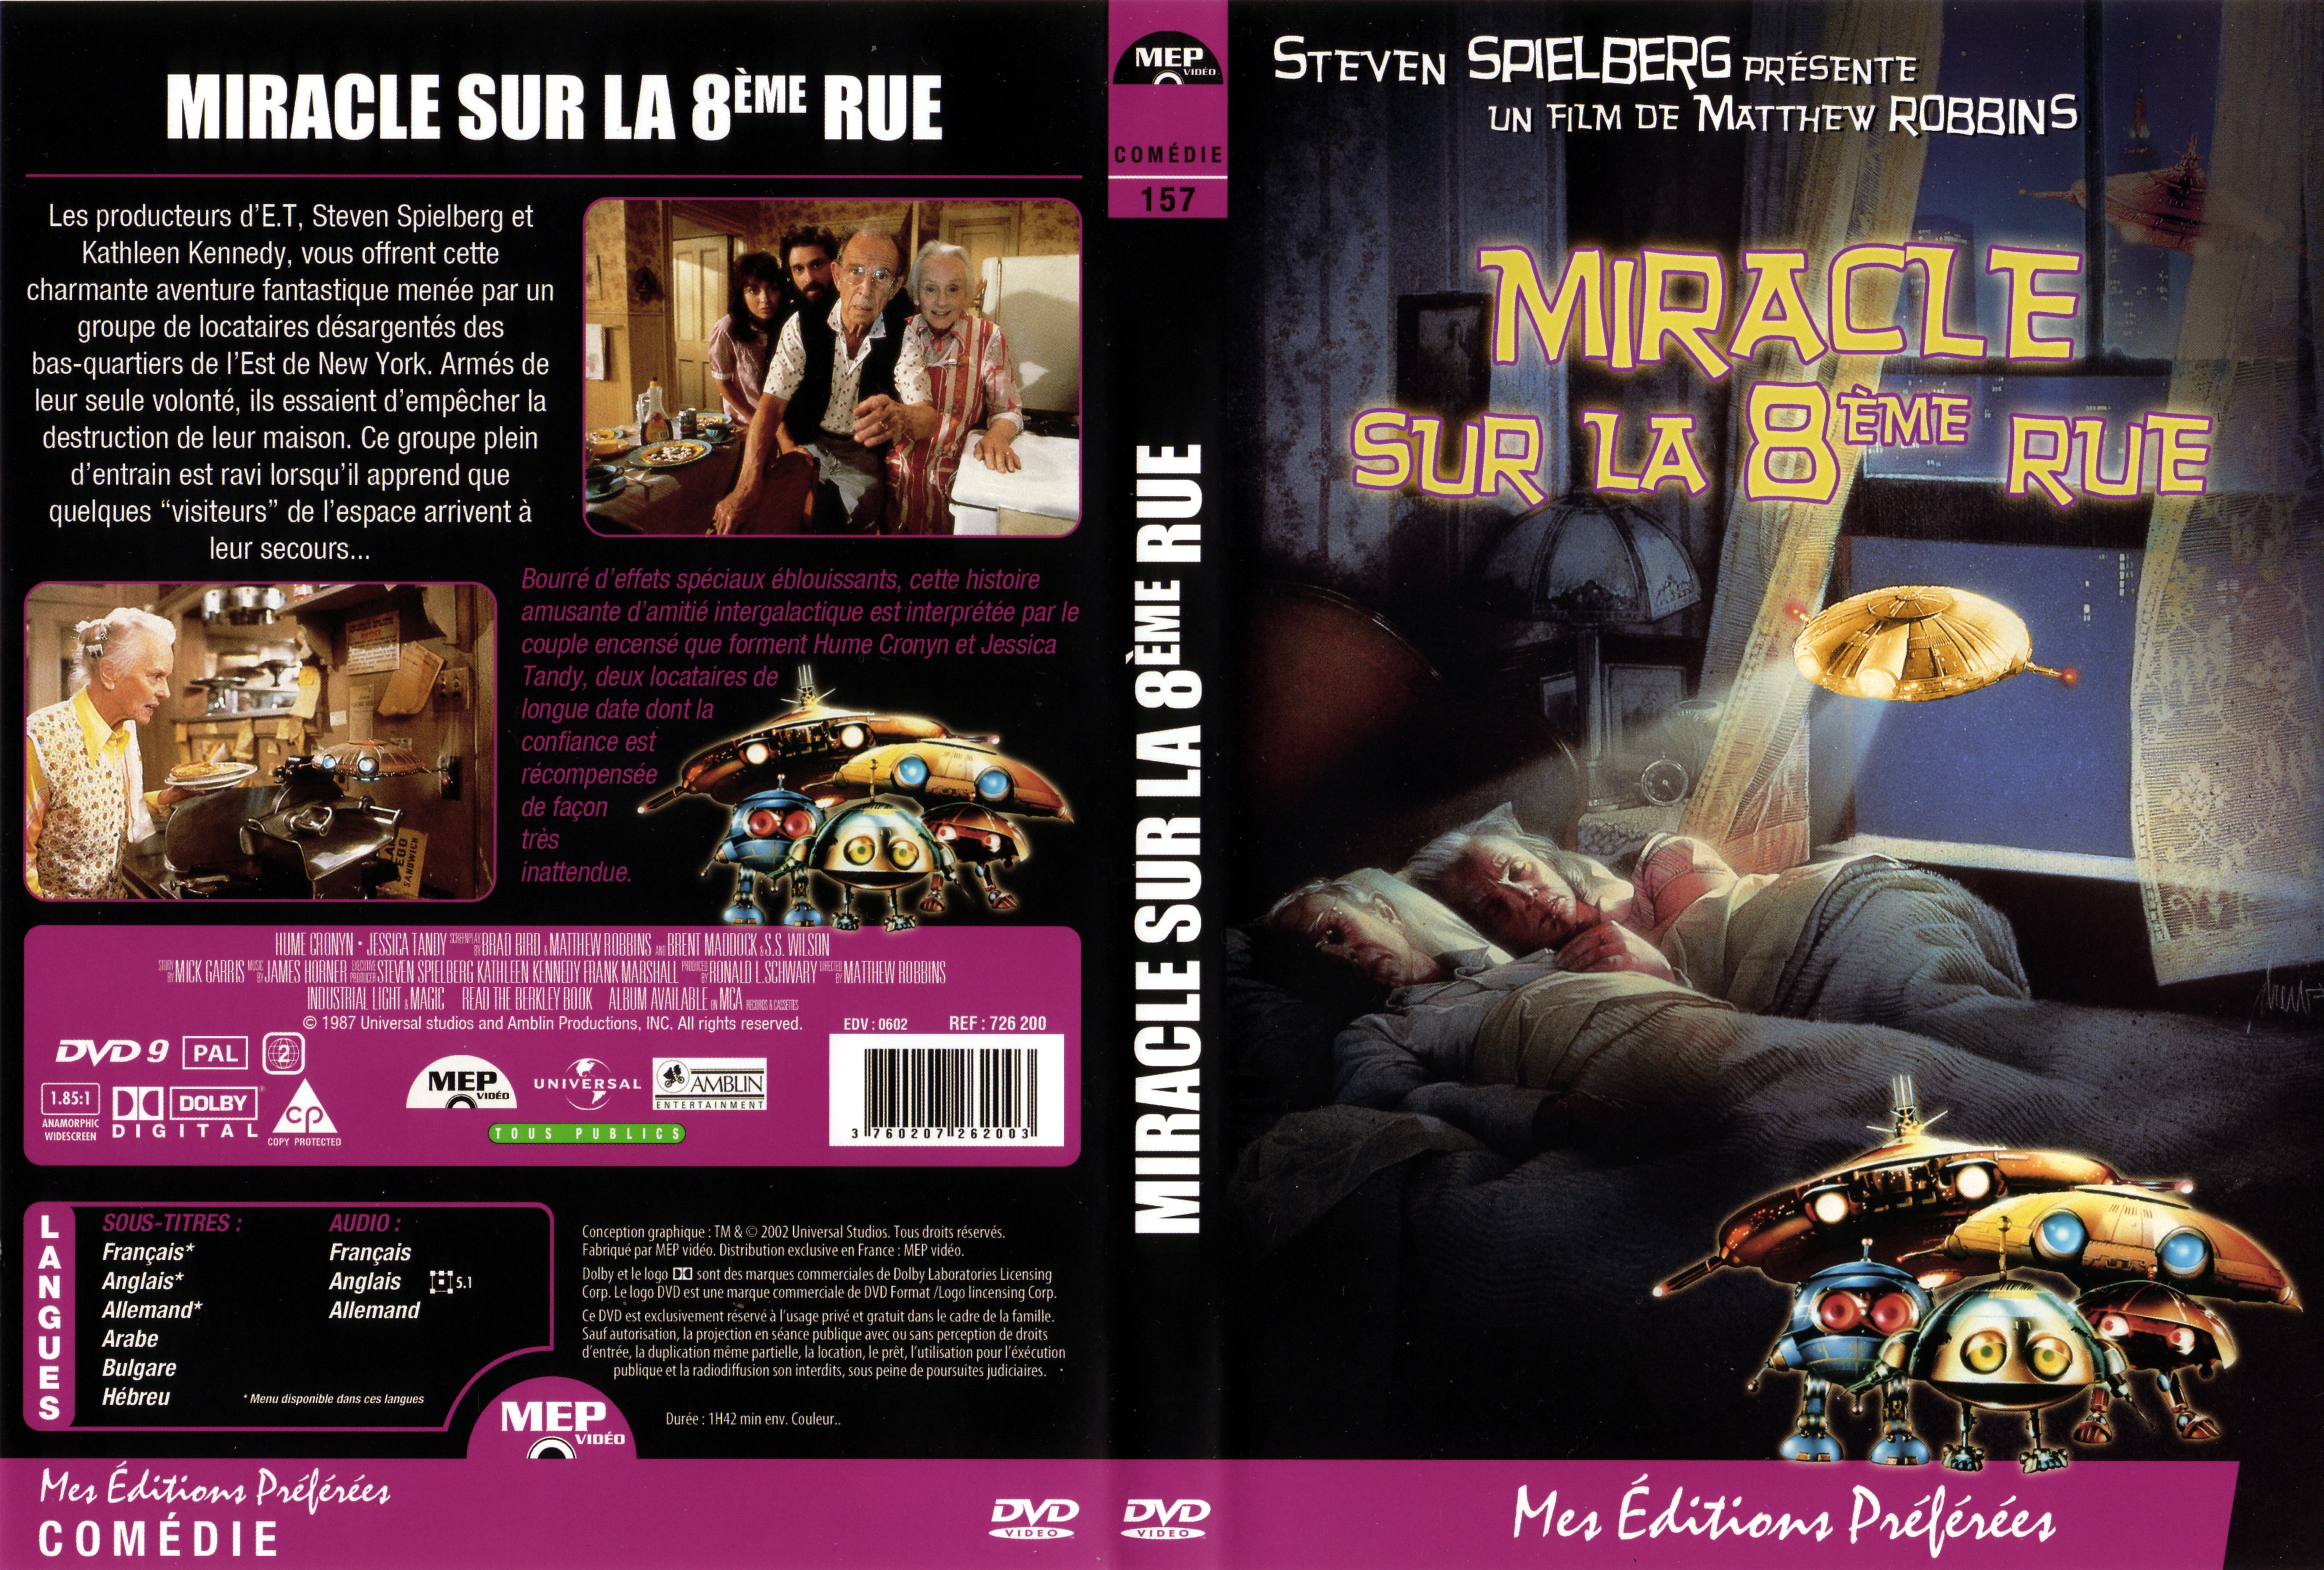 Jaquette DVD Miracle sur la 8me rue v2